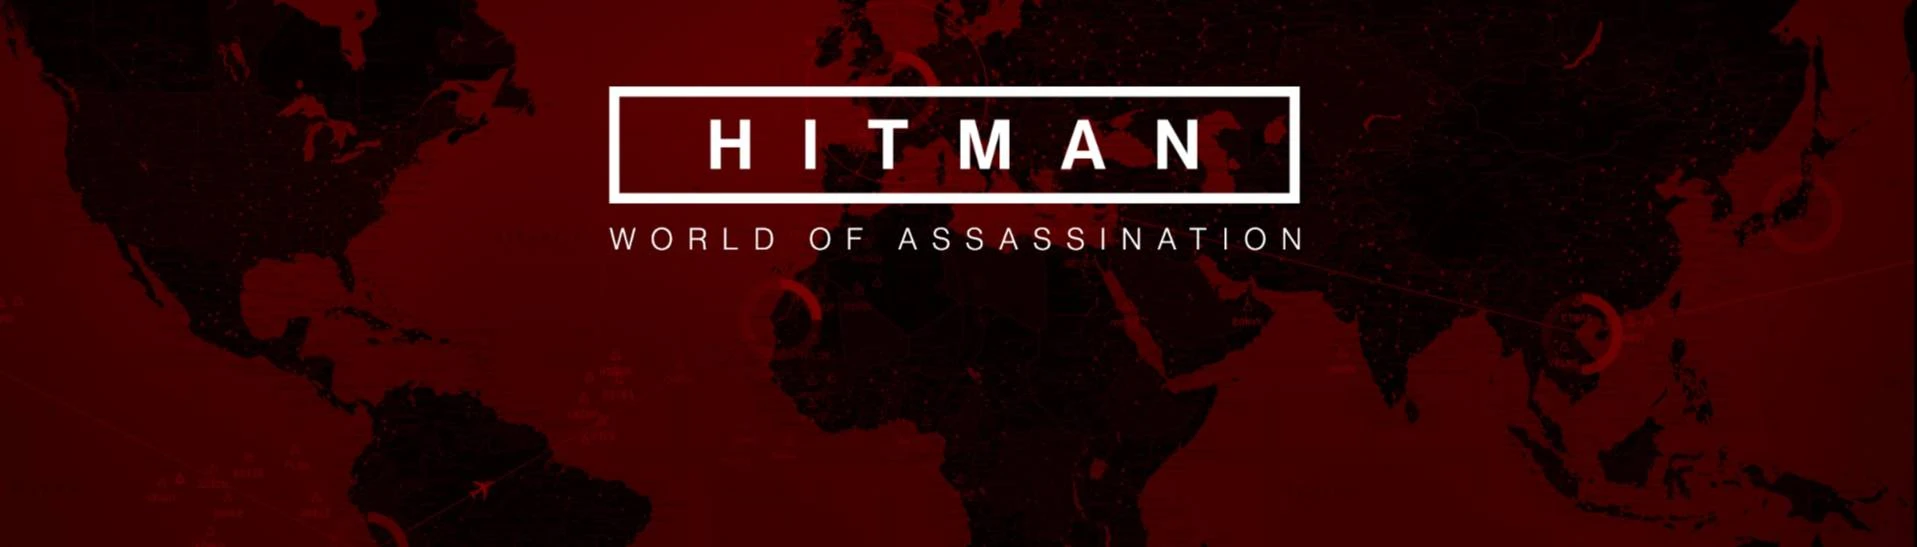 Steam Community :: Guide :: Hitman World of Assassination – Full